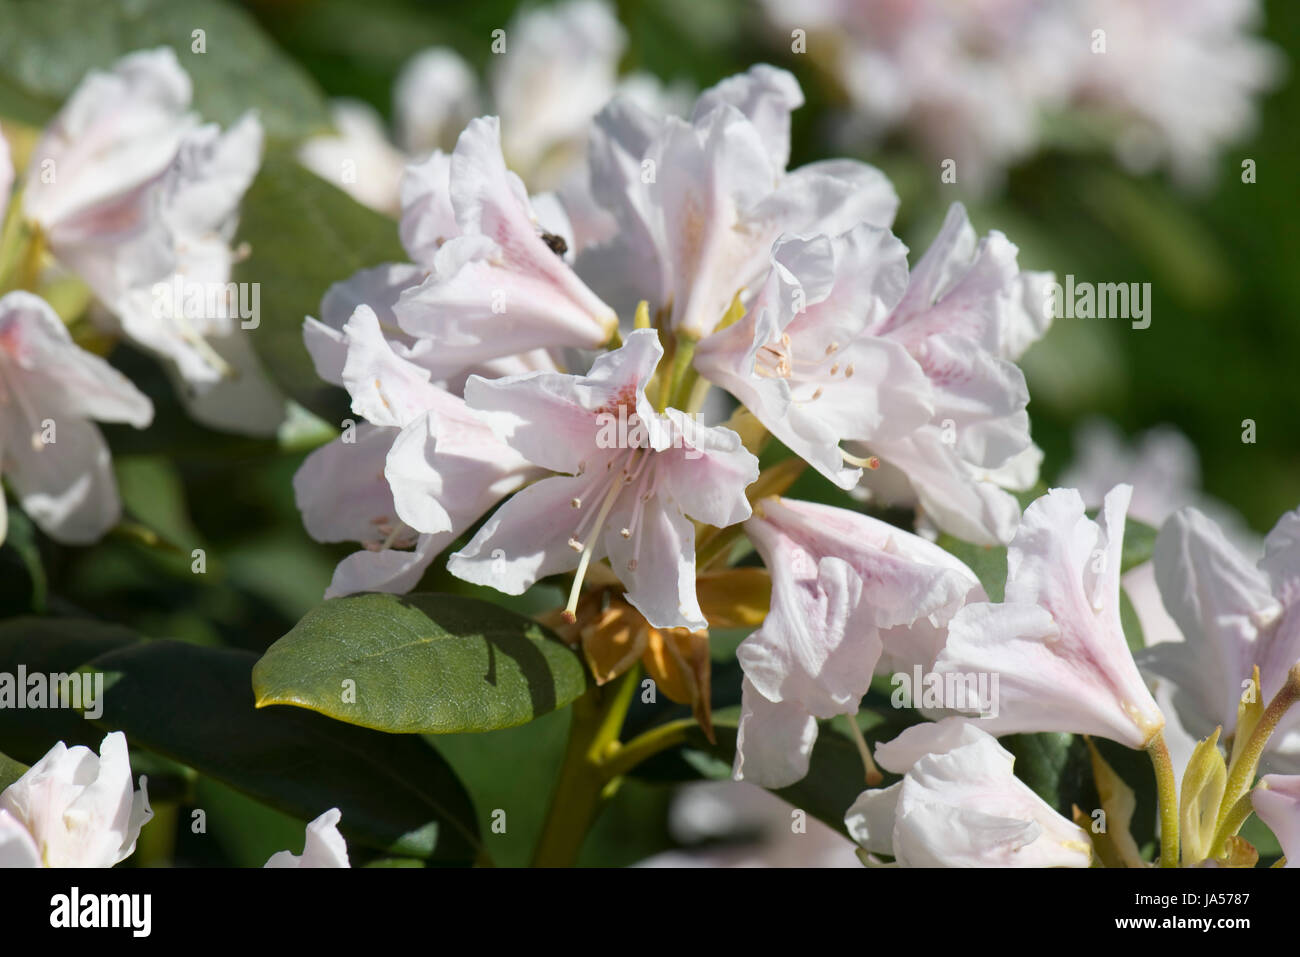 Les fleurs et les feuilles de Rhododendron 'Cunningham' Blanc, légère fleurs roses sur ce flowerinf printemps éricacée arbustive, Berkshire, Avril Banque D'Images